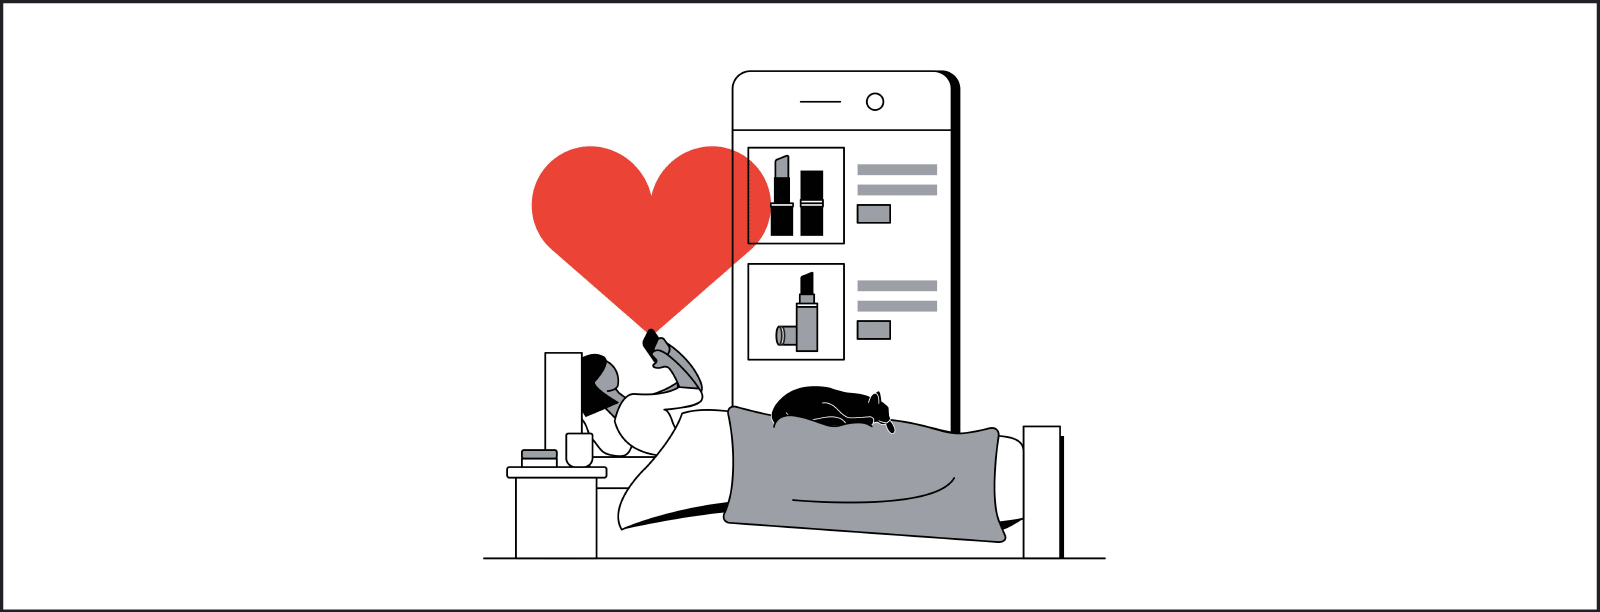 Ilustración de una persona echada en una cama, navegando por Internet con su móvil y con un gato negro acurrucado a sus pies. Hay un corazón rojo dibujado sobre ellos. En el fondo de la ilustración hay un smartphone en cuya pantalla se muestran productos